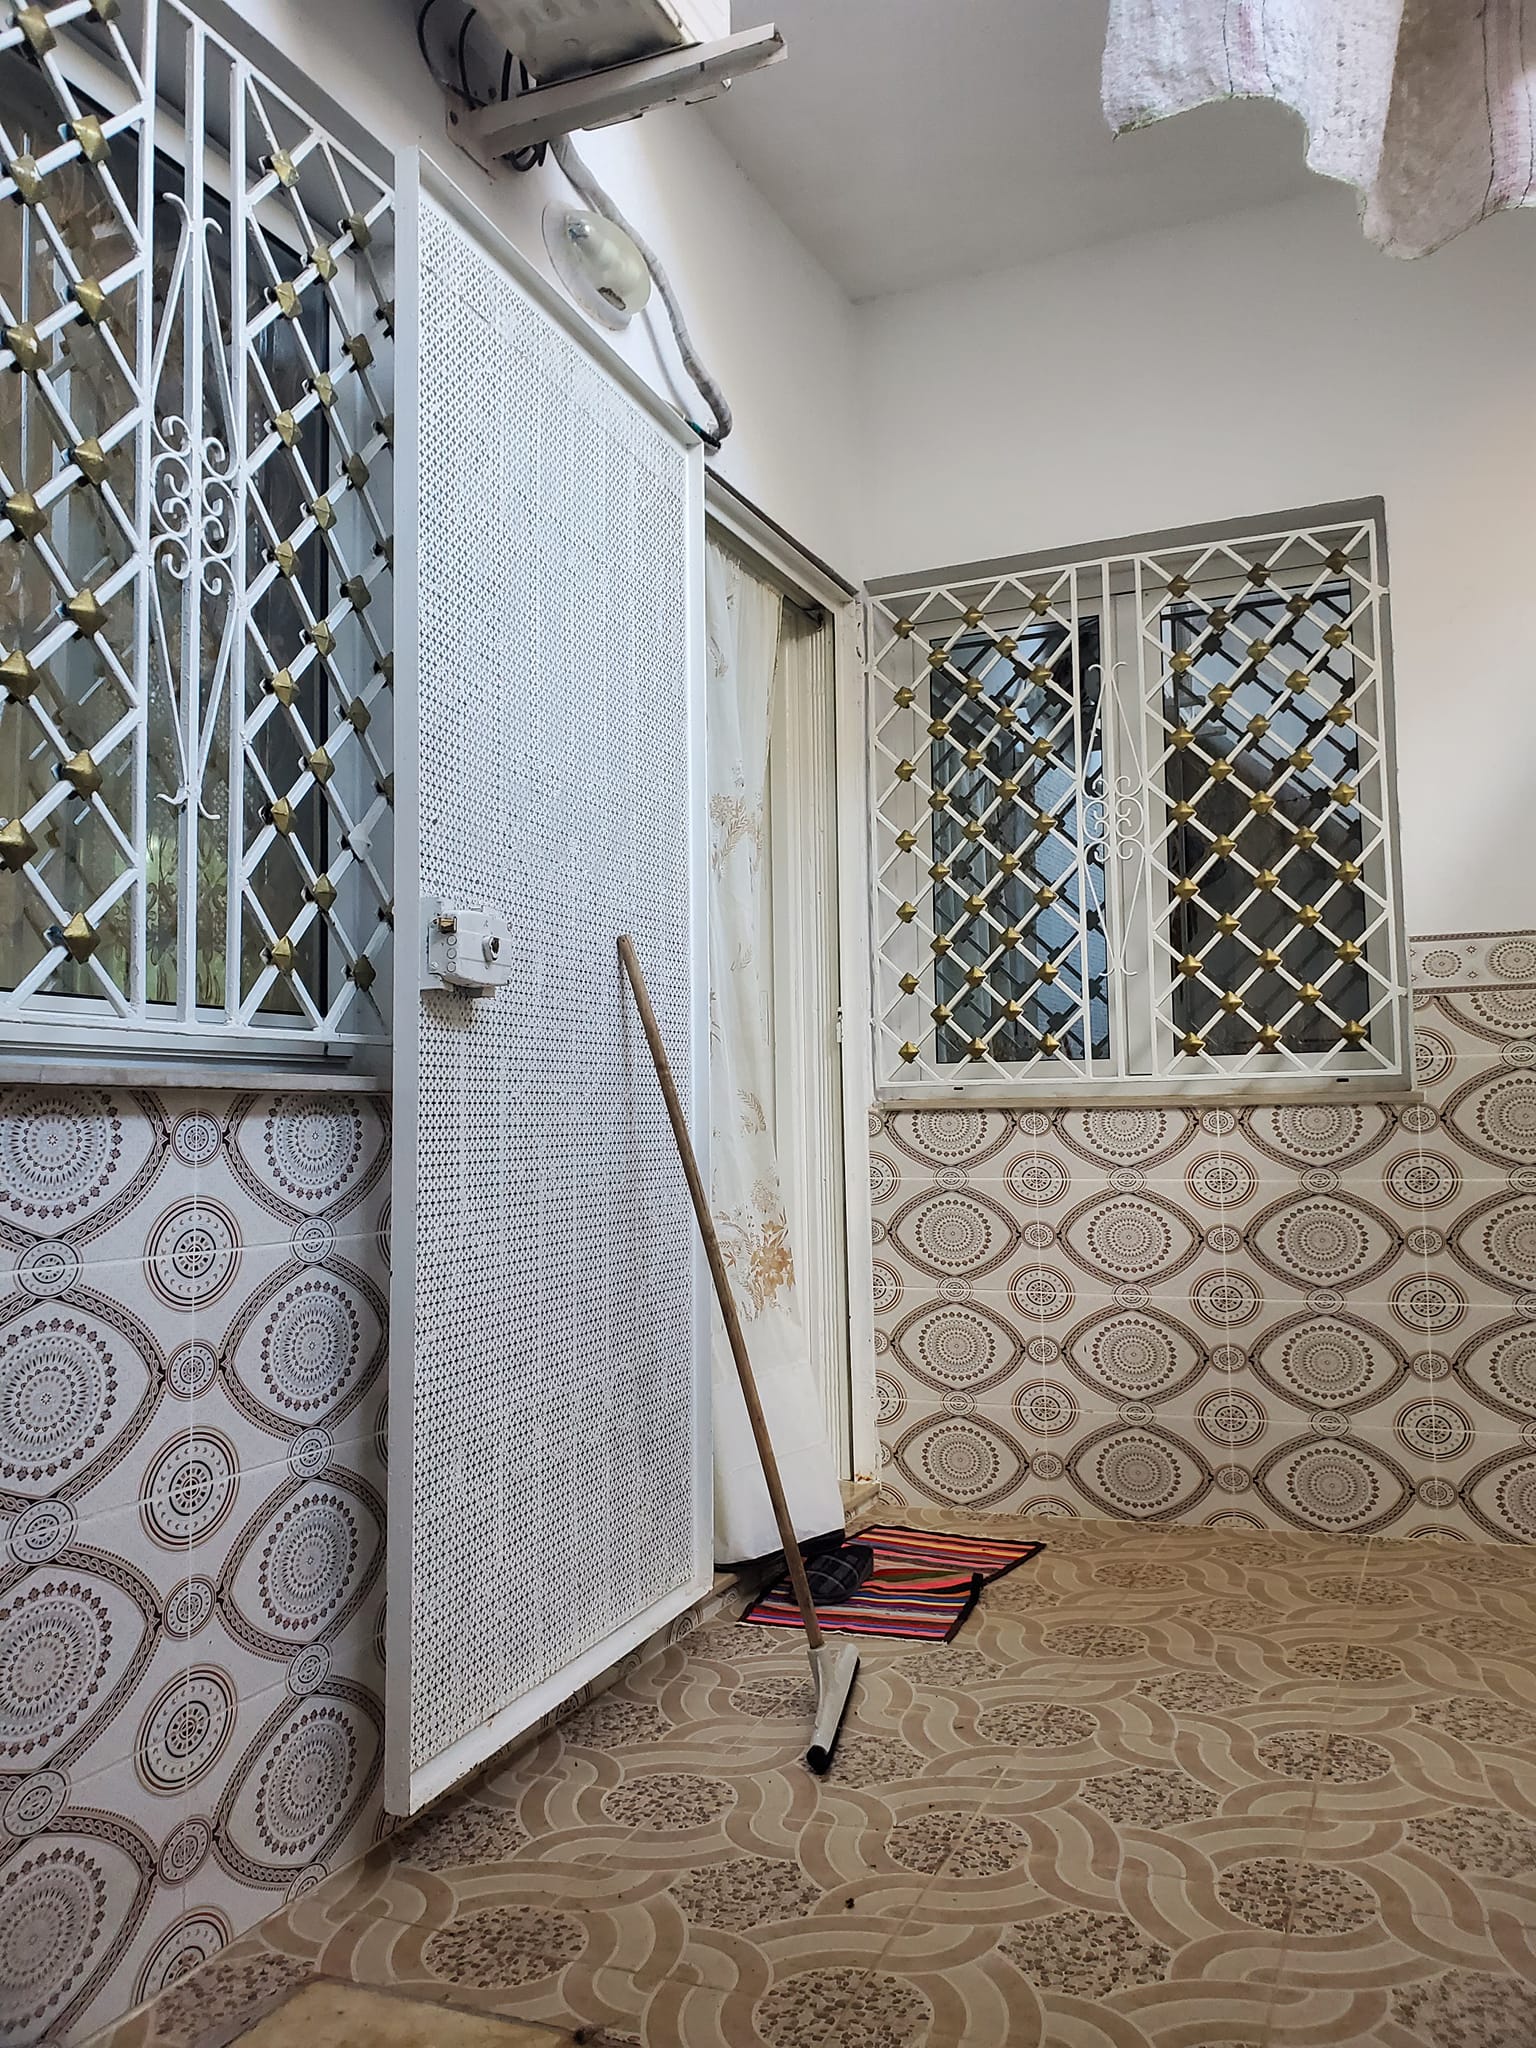 #VenteAppartement - Apartment for sale #immobilier #realestate #vente "Maison à vendre" "Portes ouvertes" TUNIS